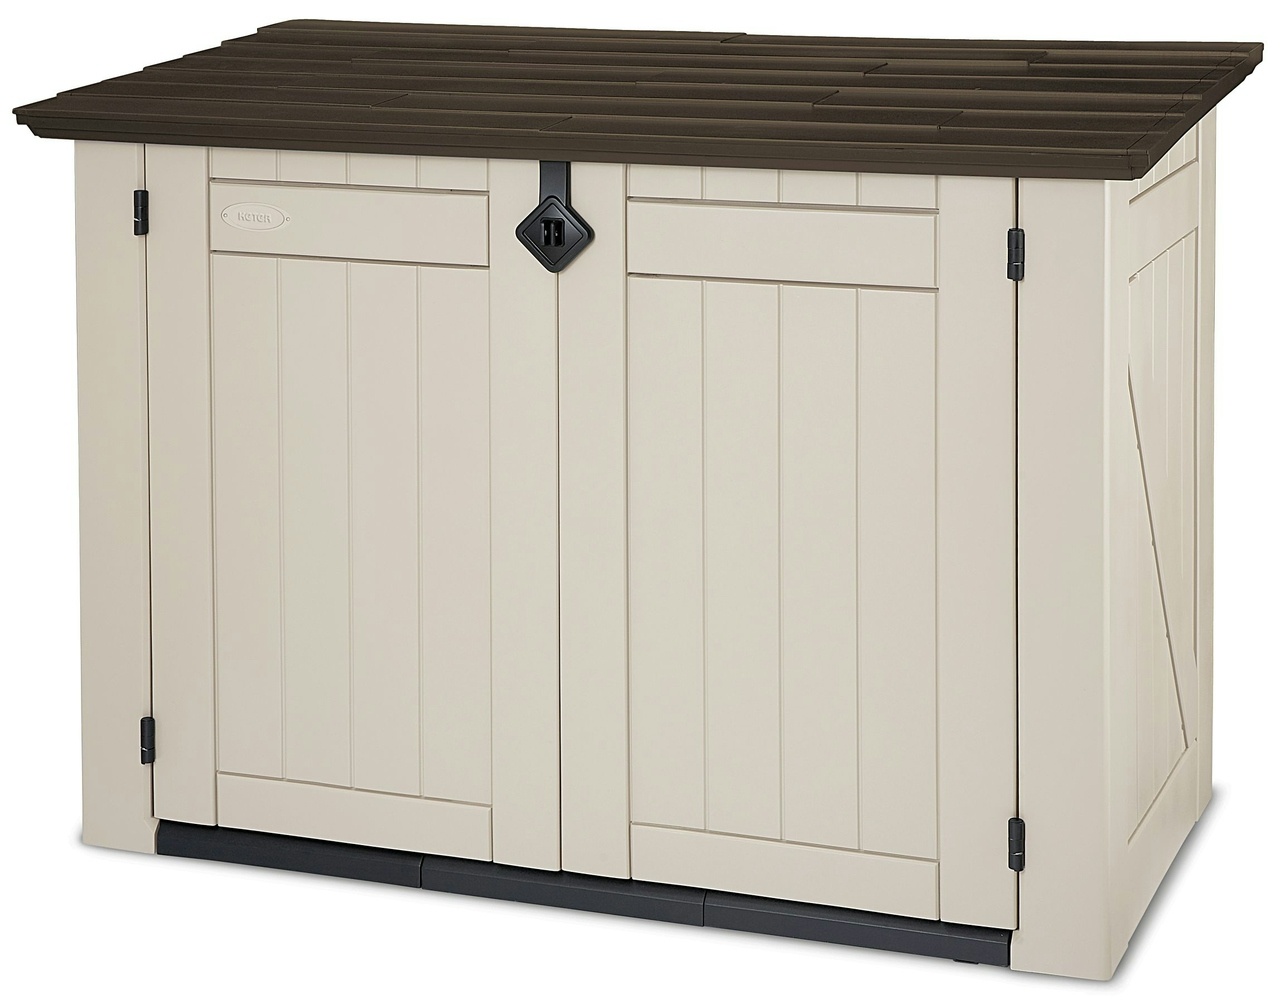 Keter Garten-Gerätebox Store It Out, Polypropylen, 146 x 82 x 125 cm, beige, 1200 L